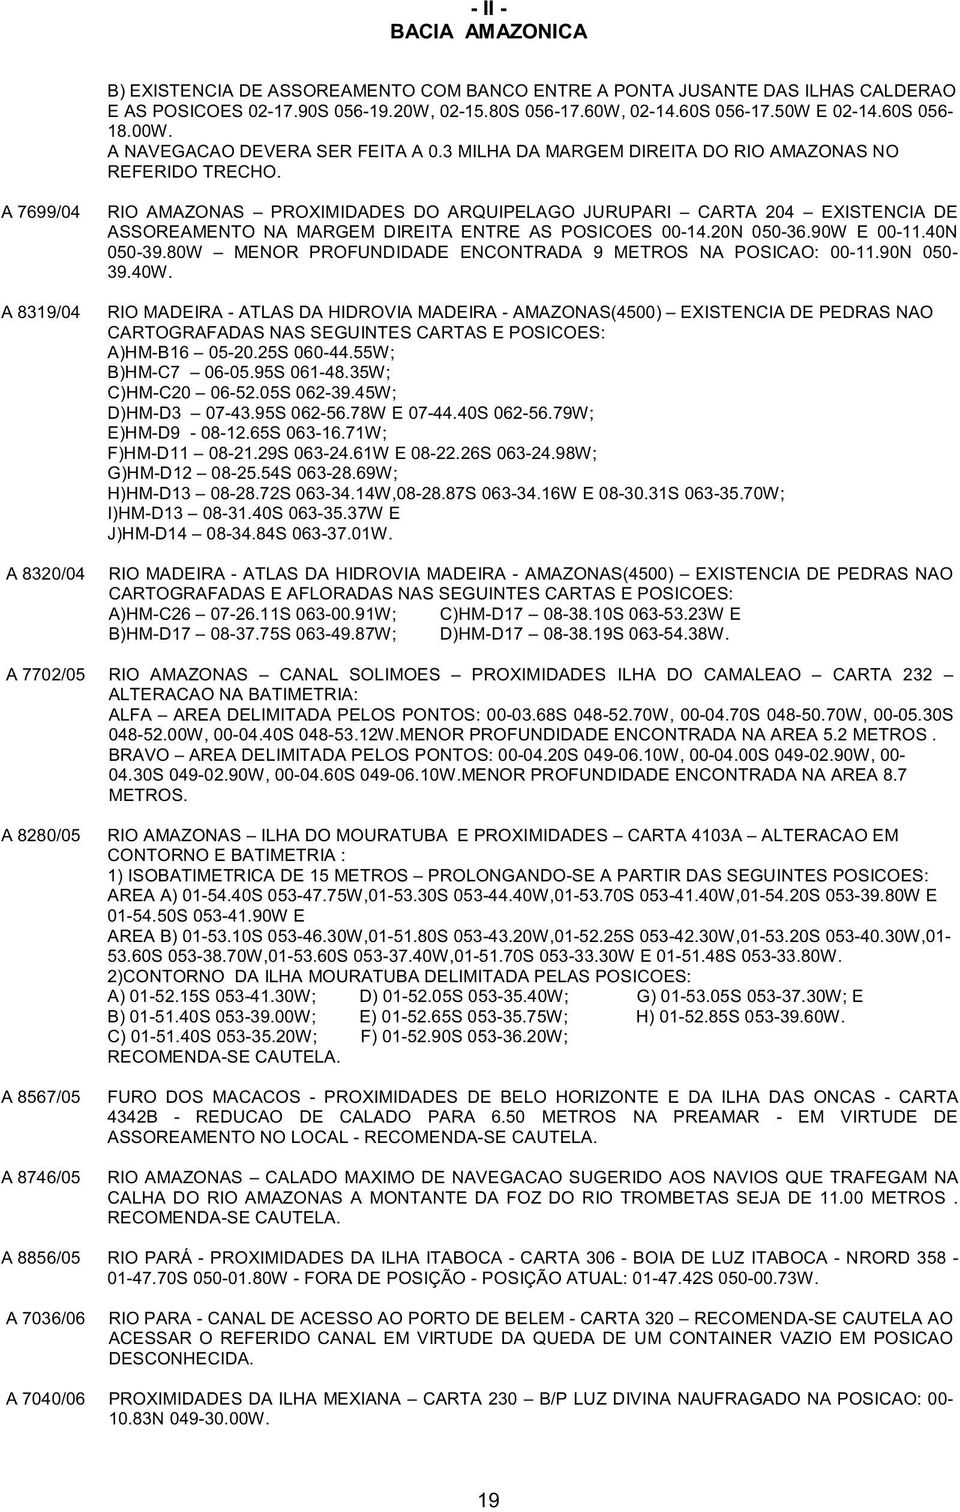 A 7699/04 A 8319/04 A 8320/04 RIO AMAZONAS PROXIMIDADES DO ARQUIPELAGO JURUPARI CARTA 204 EXISTENCIA DE ASSOREAMENTO NA MARGEM DIREITA ENTRE AS POSICOES 00-14.20N 050-36.90W E 00-11.40N 050-39.